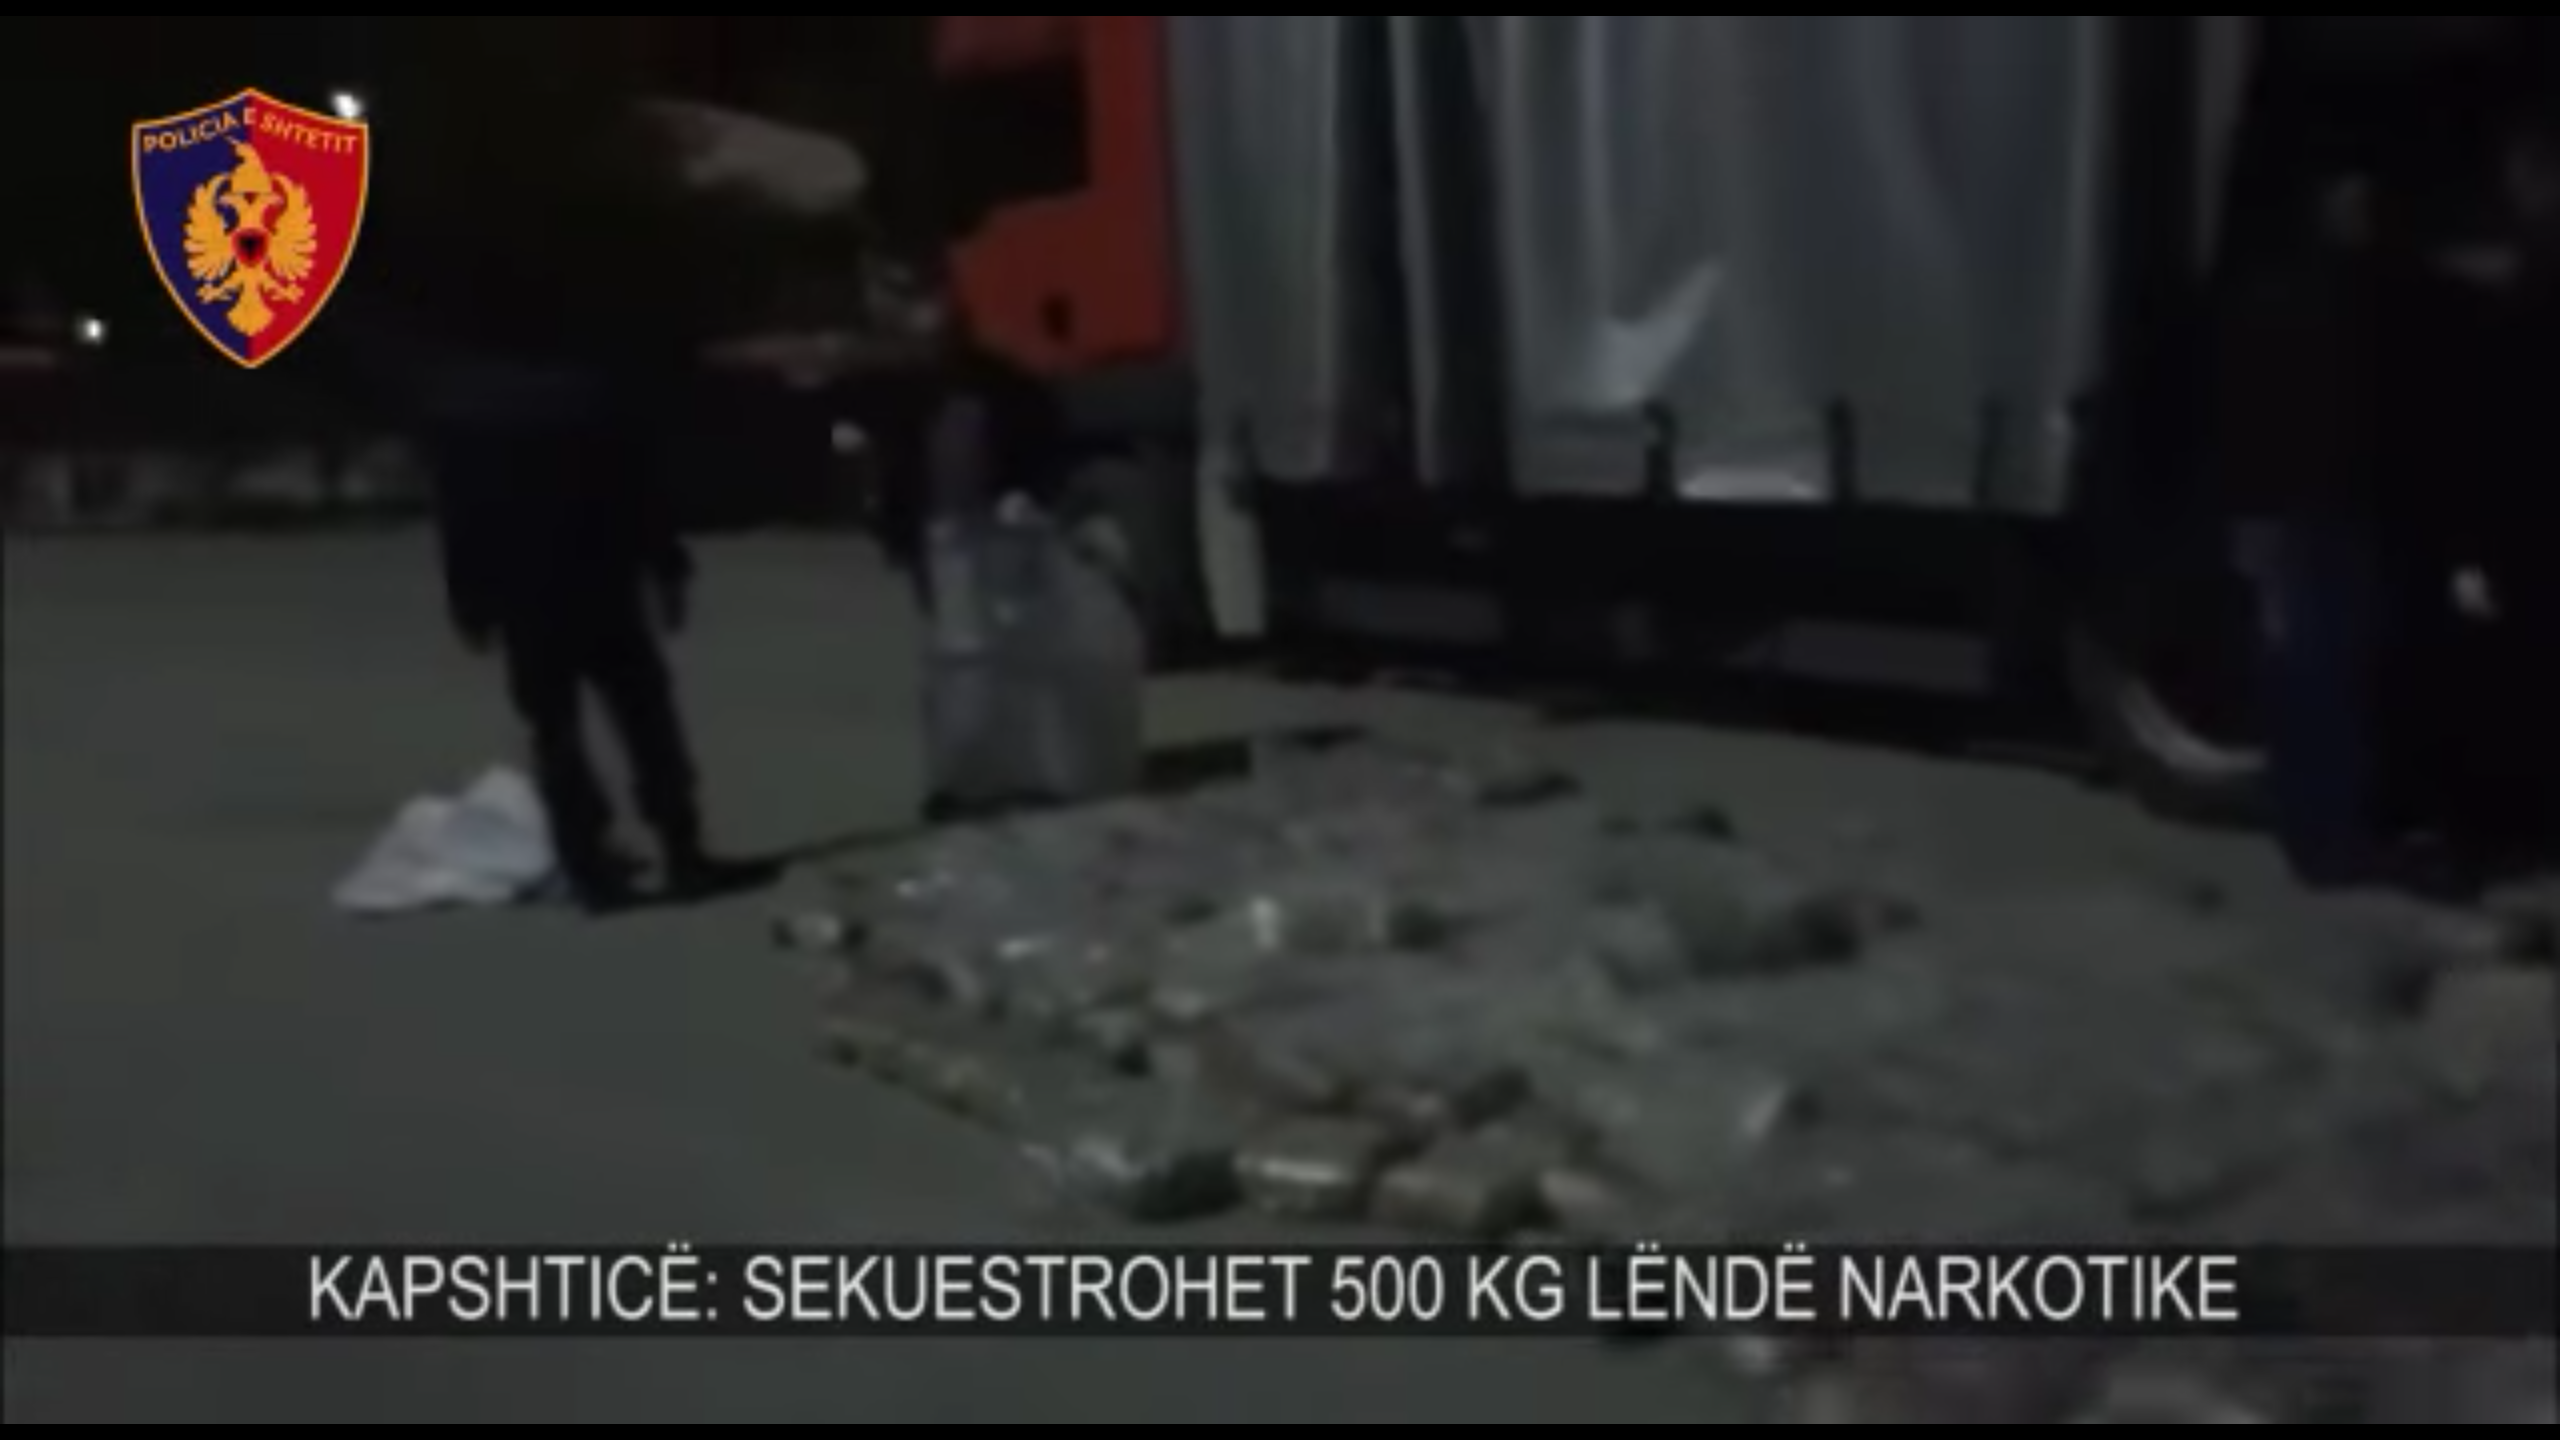 Kamioni me 574 kg drogë, 3 durrsakë në pranga (Video)